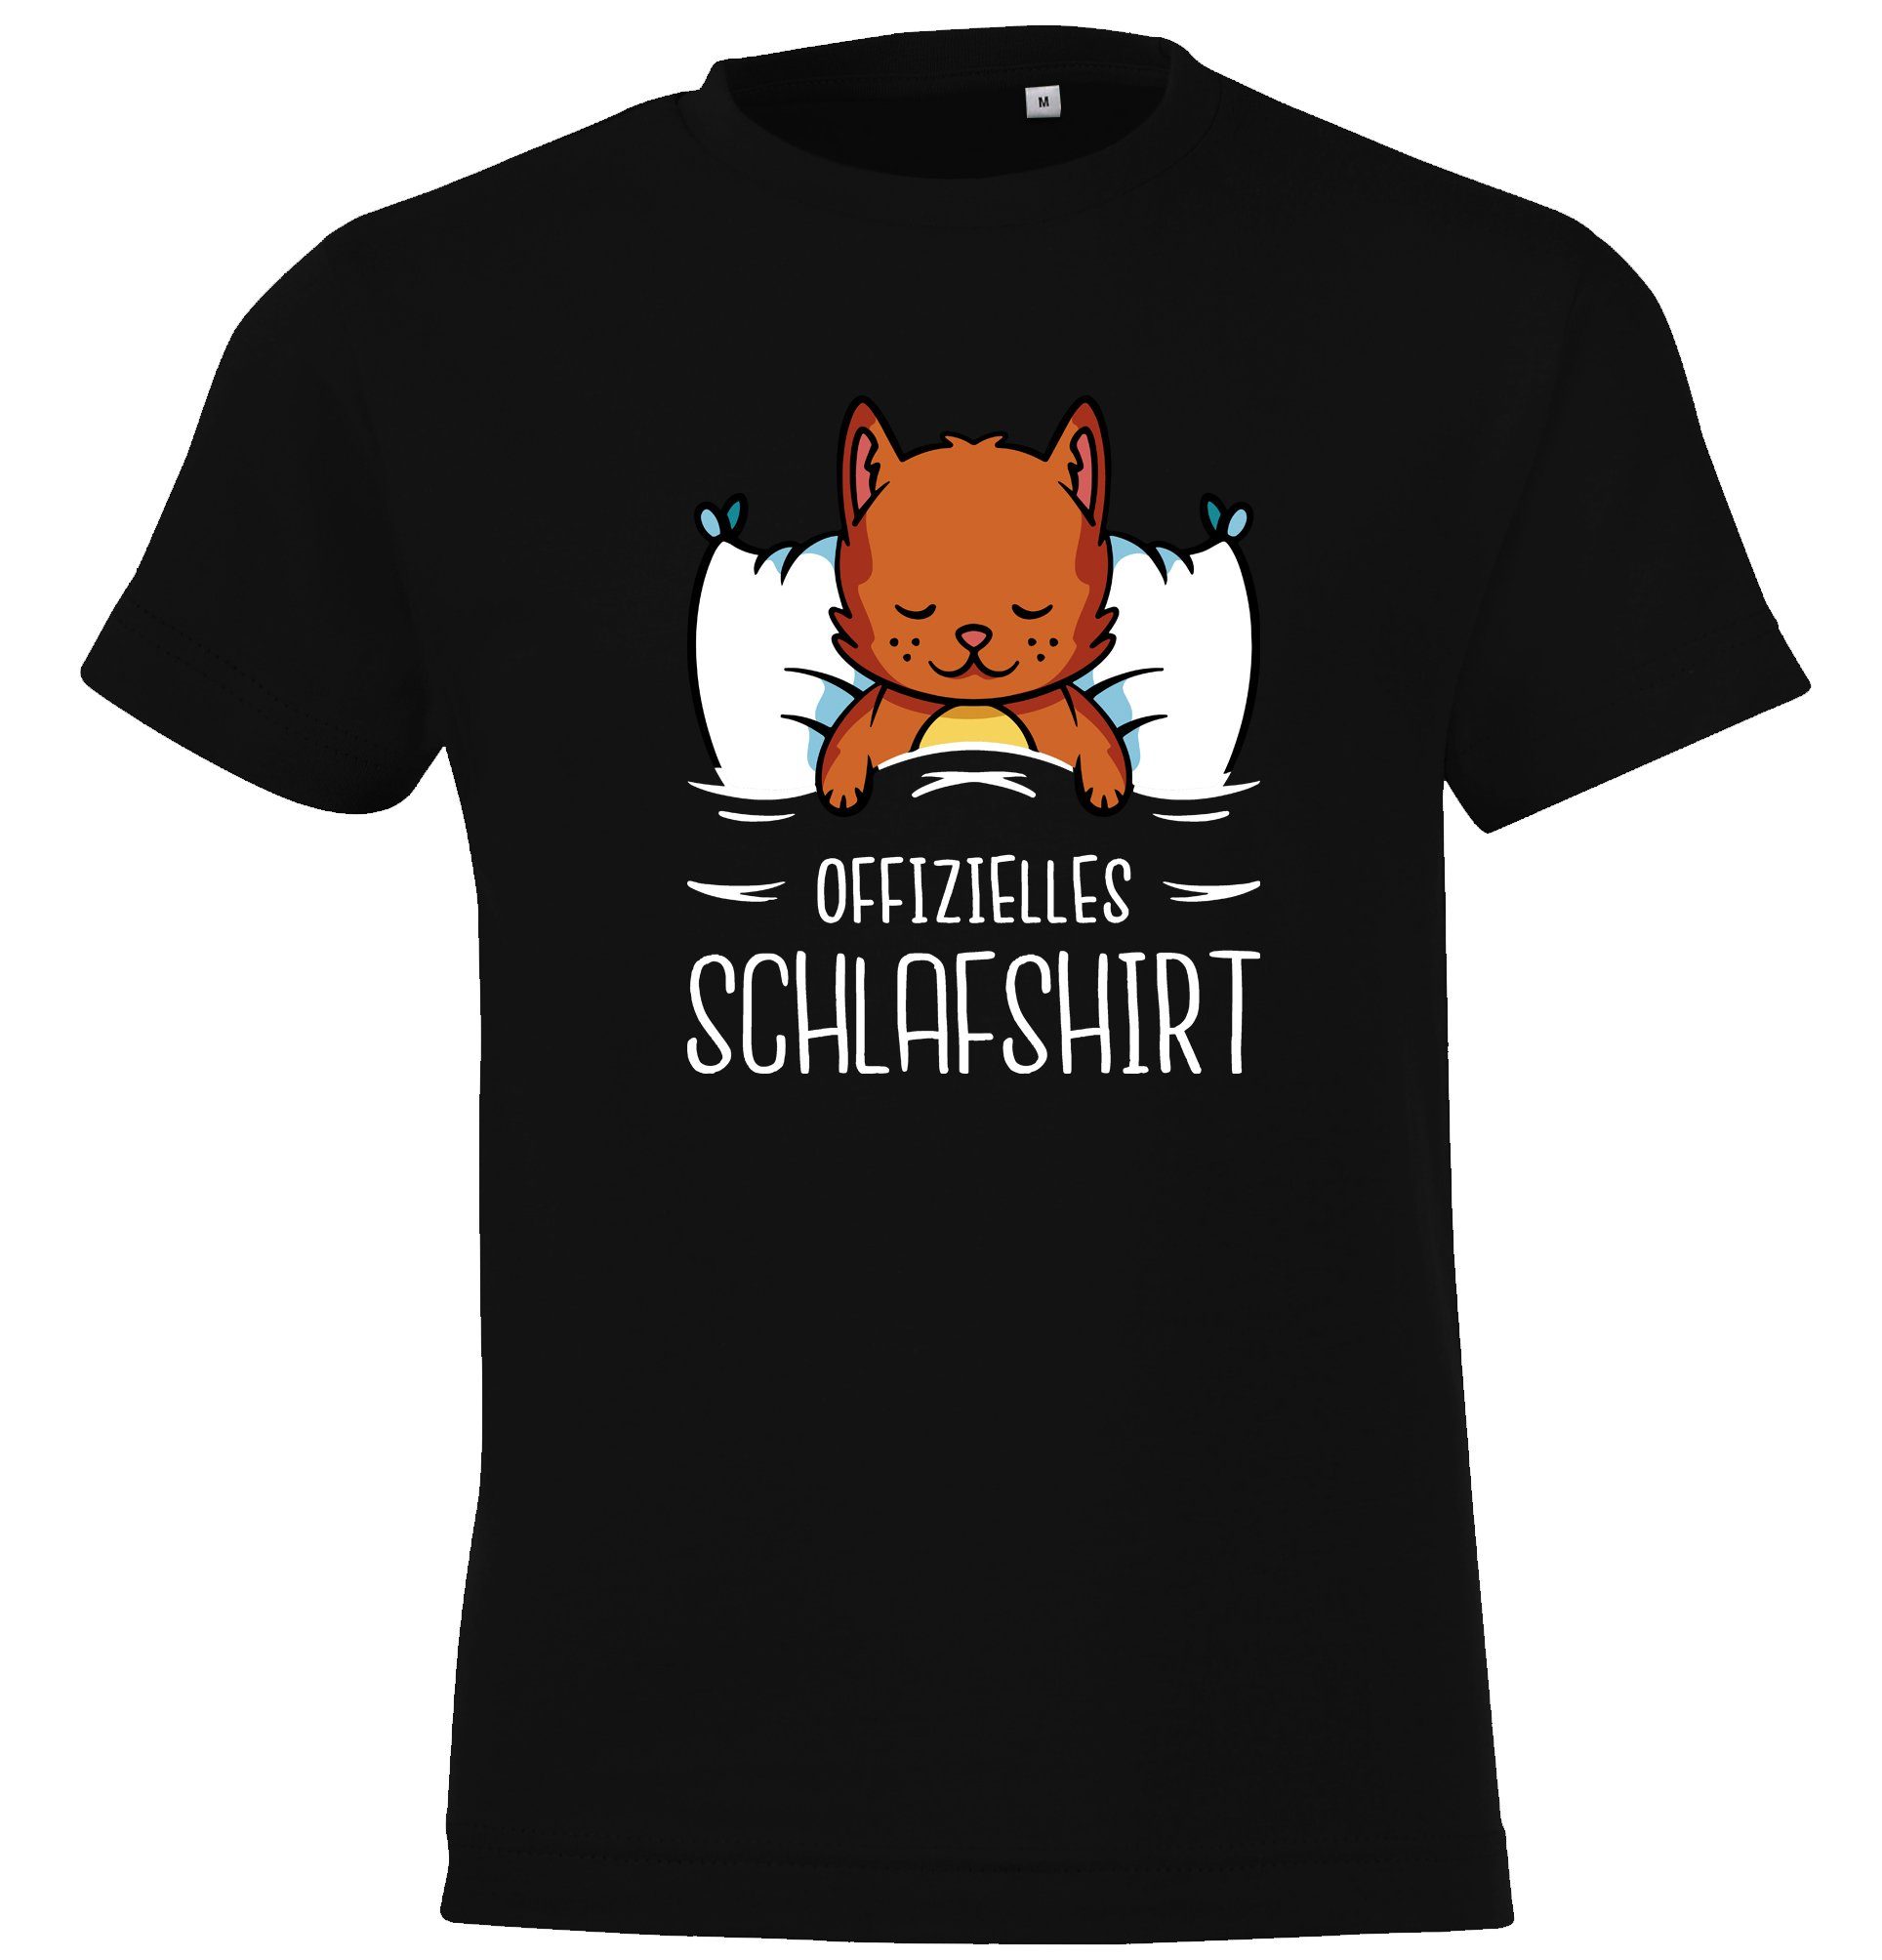 Youth Designz T-Shirt Schlafshirt mit Katze Frontprint Offizielles und Schwarz Mädchen Kinder für Jungen mit lustigem Shirt